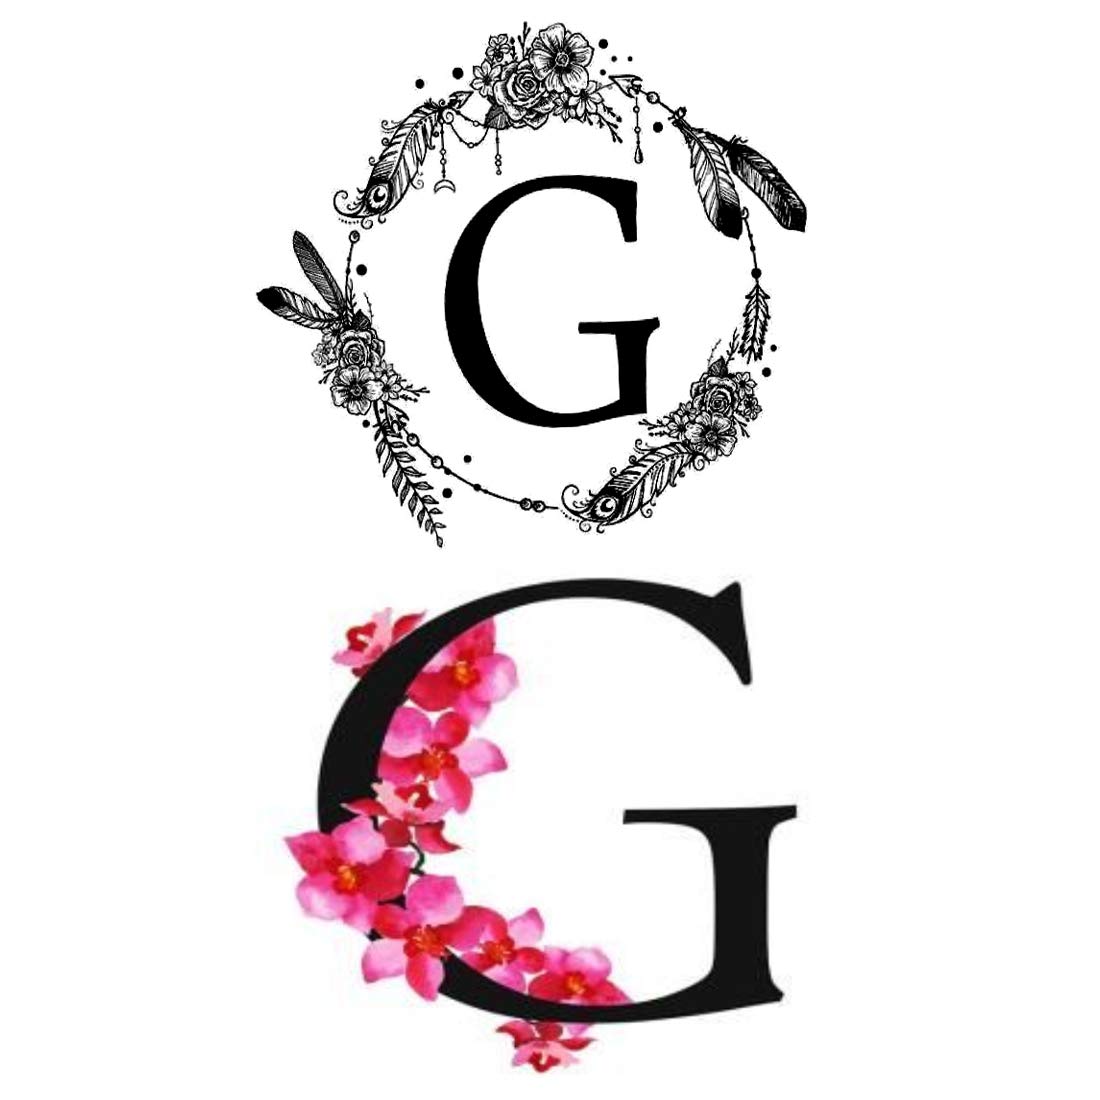 G Letter Tattoos For Girls  G Letter Tattoo Design Ideas For Girls   Womens Tattoos  YouTube